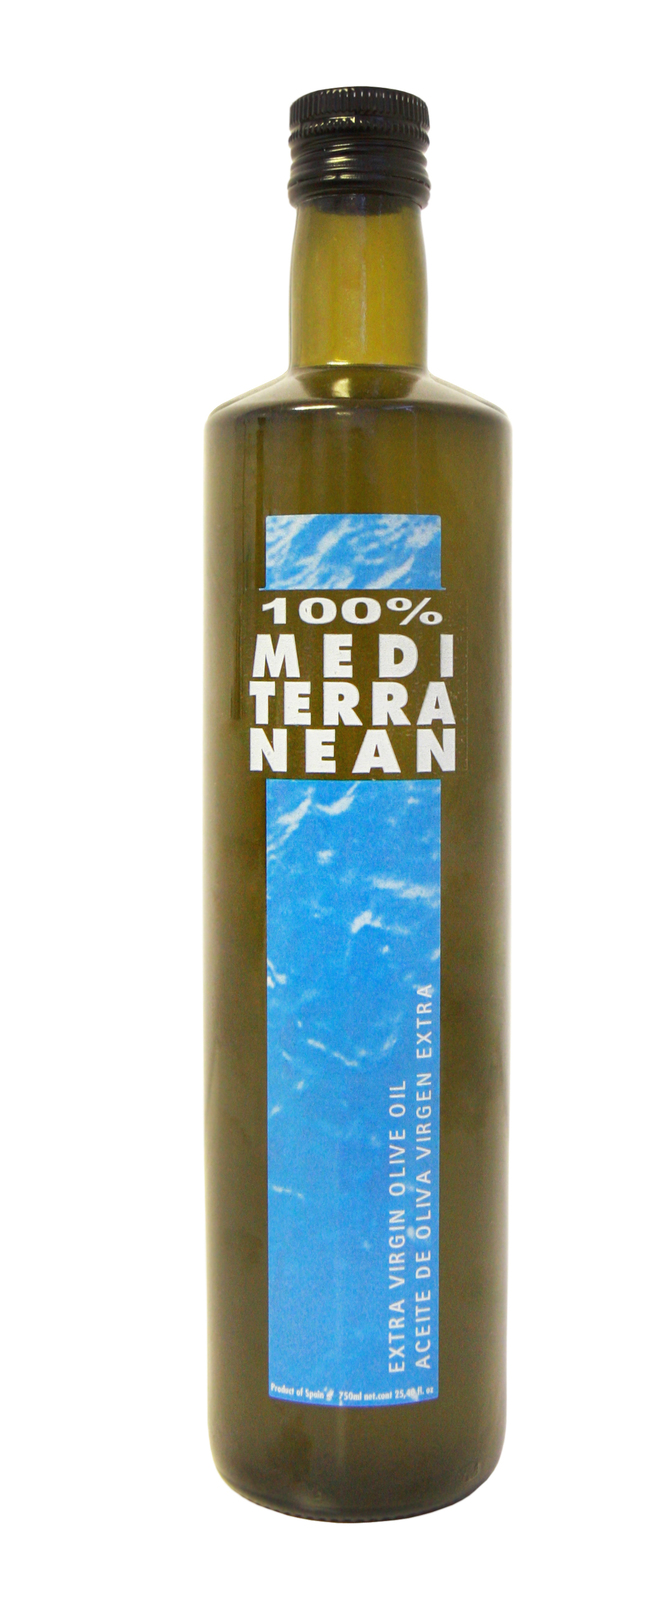 Extra Virgin Olive Oil Beneoliva 100% Mediterranean